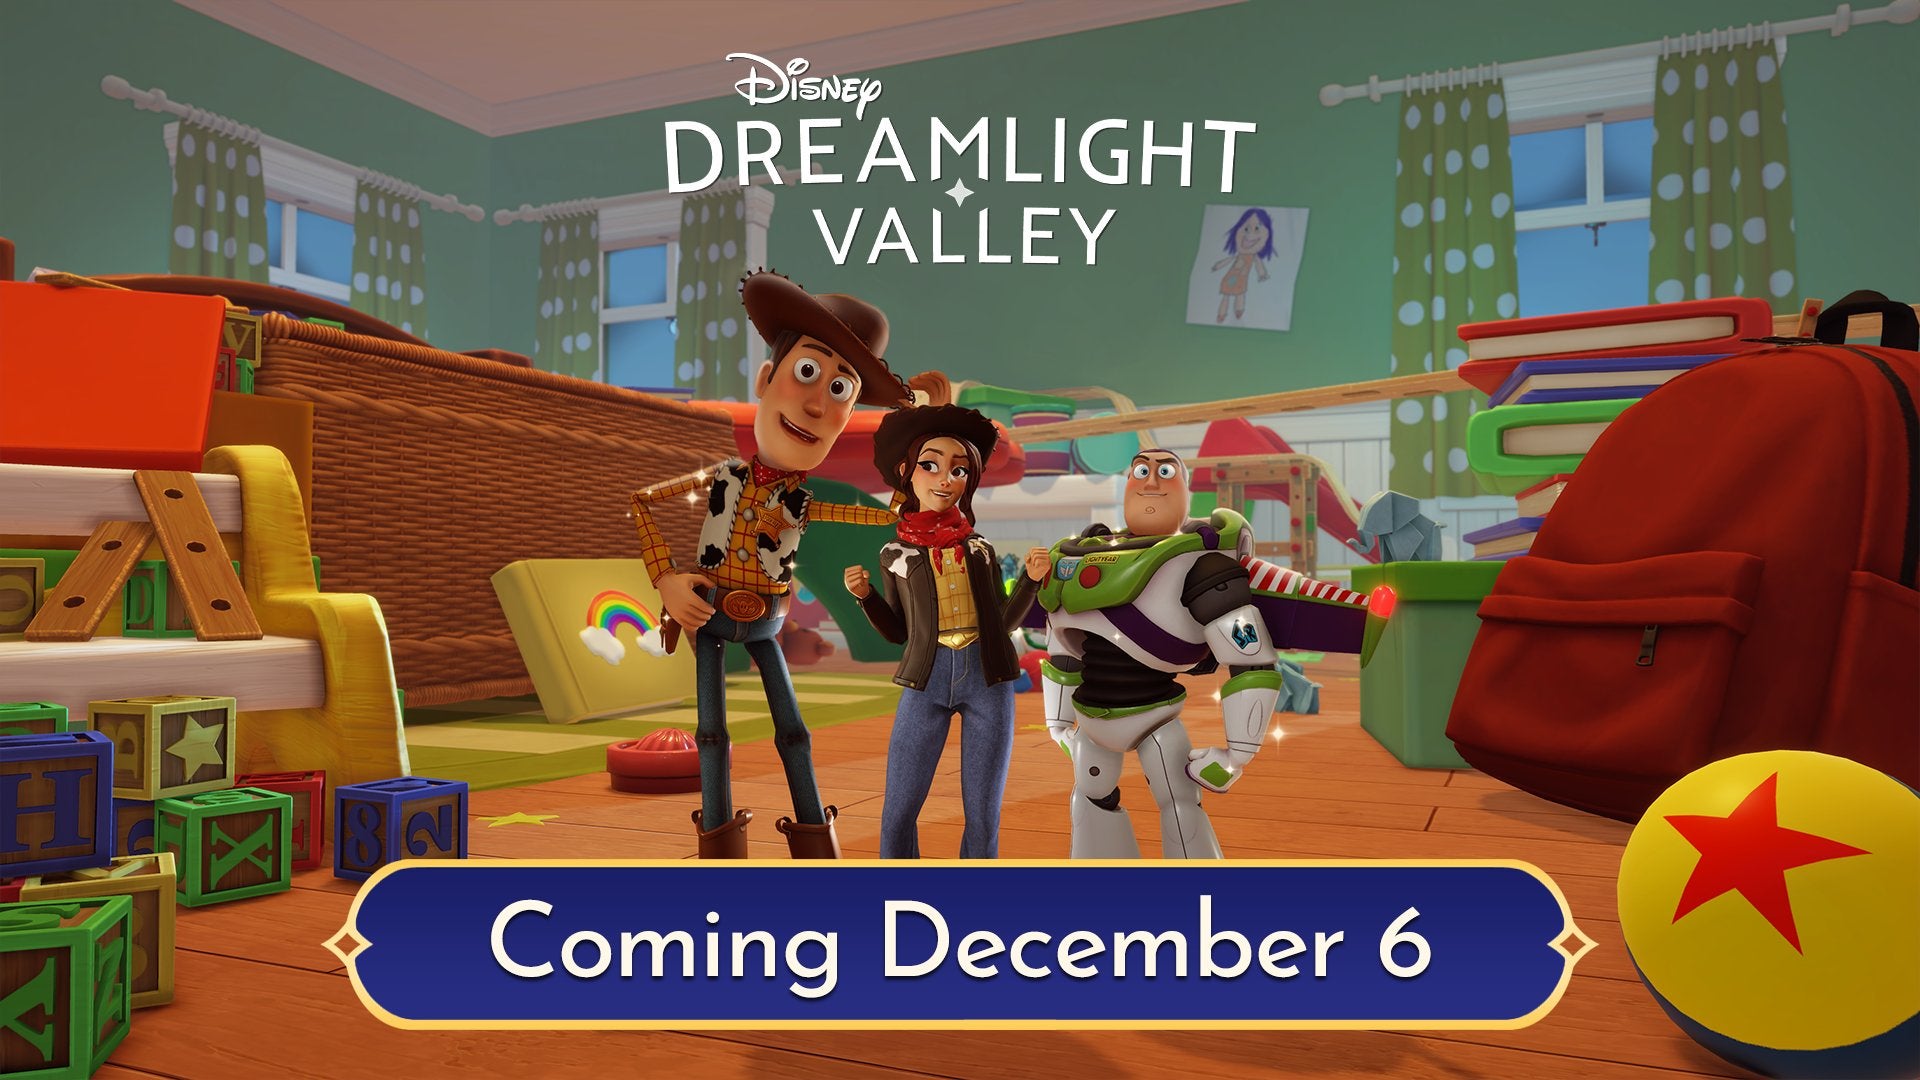 Disney Dreamlight Valley akan memperkenalkan Woody dan Buzz Lightyear dari Toy Story pada bulan Desember